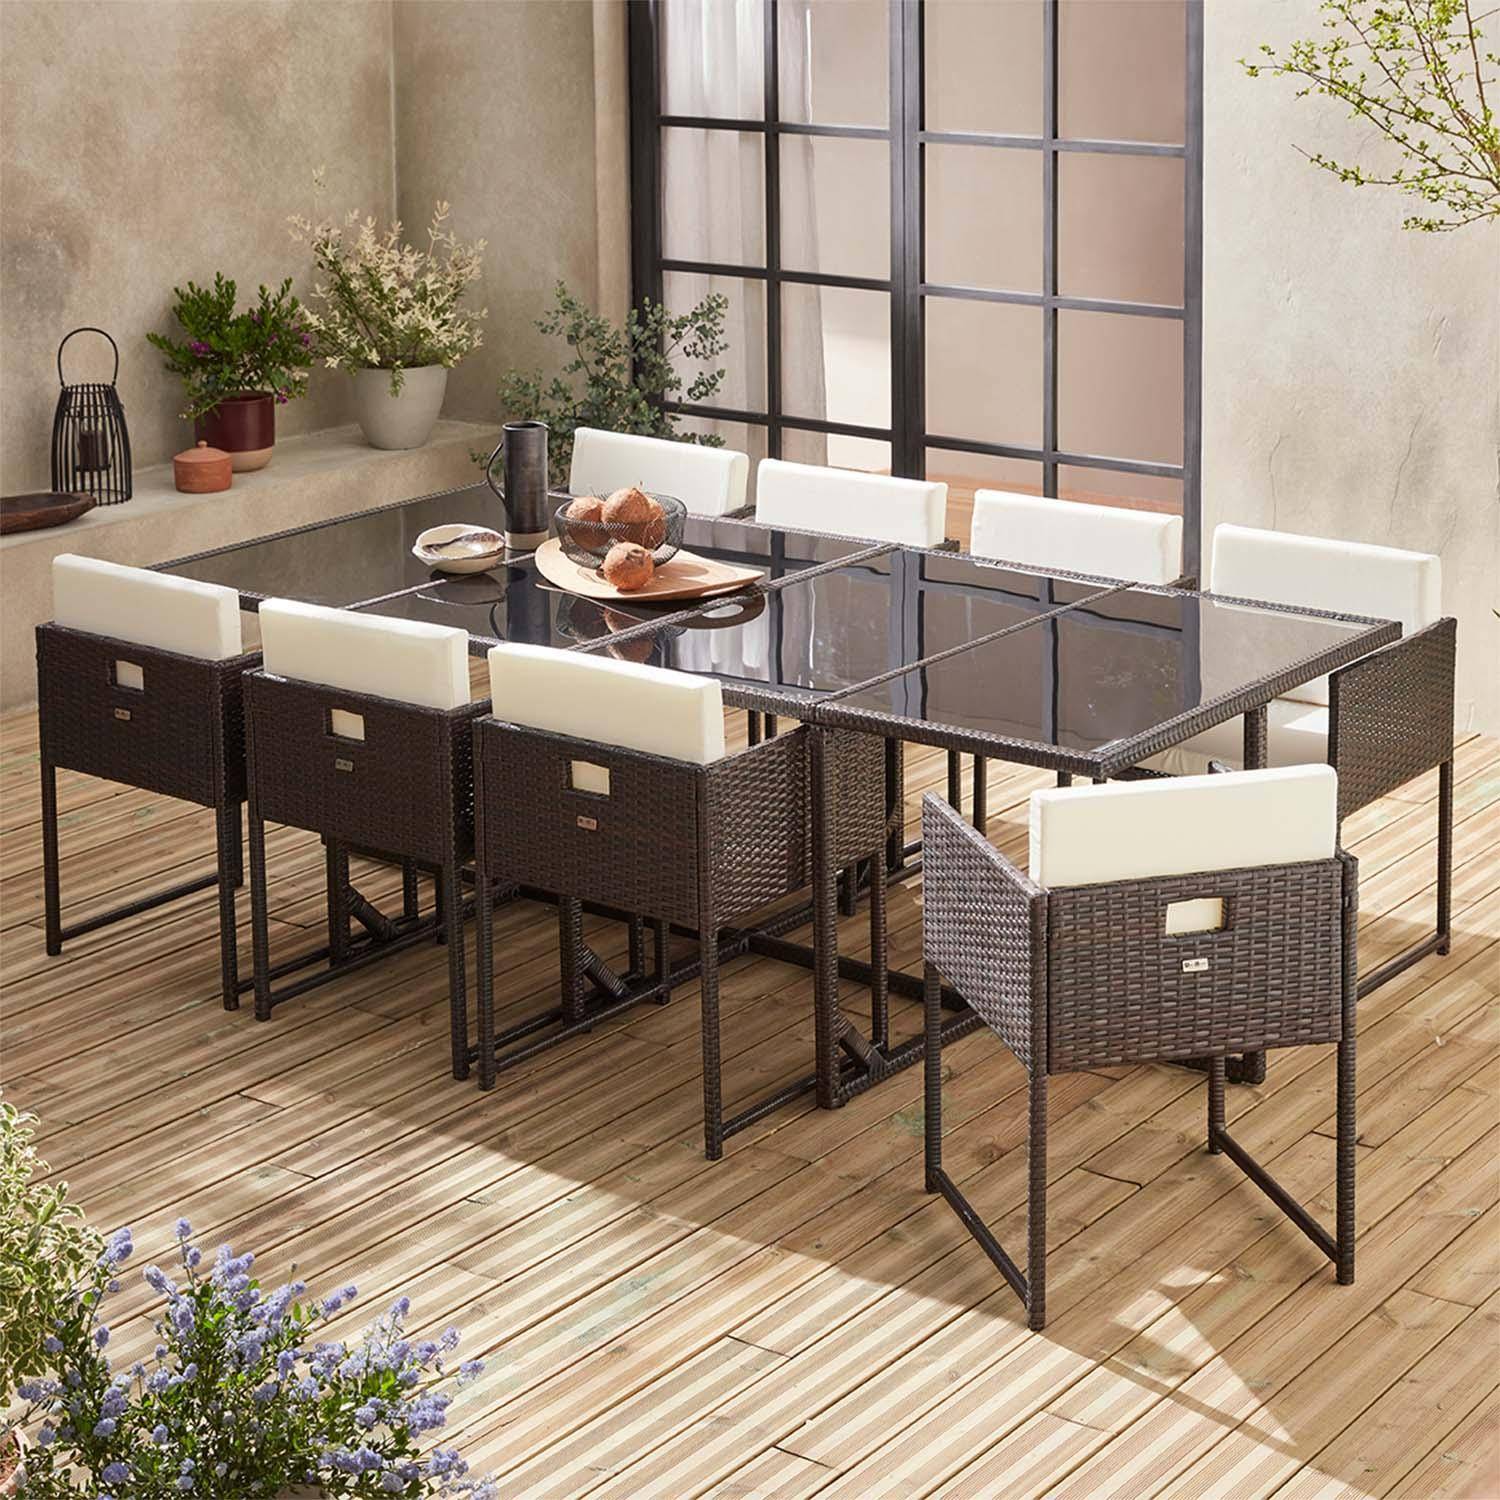 Table de jardin en résine 8 places – FIRENZE 8 – coloris marron, coussins blancs, table encastrable Photo1